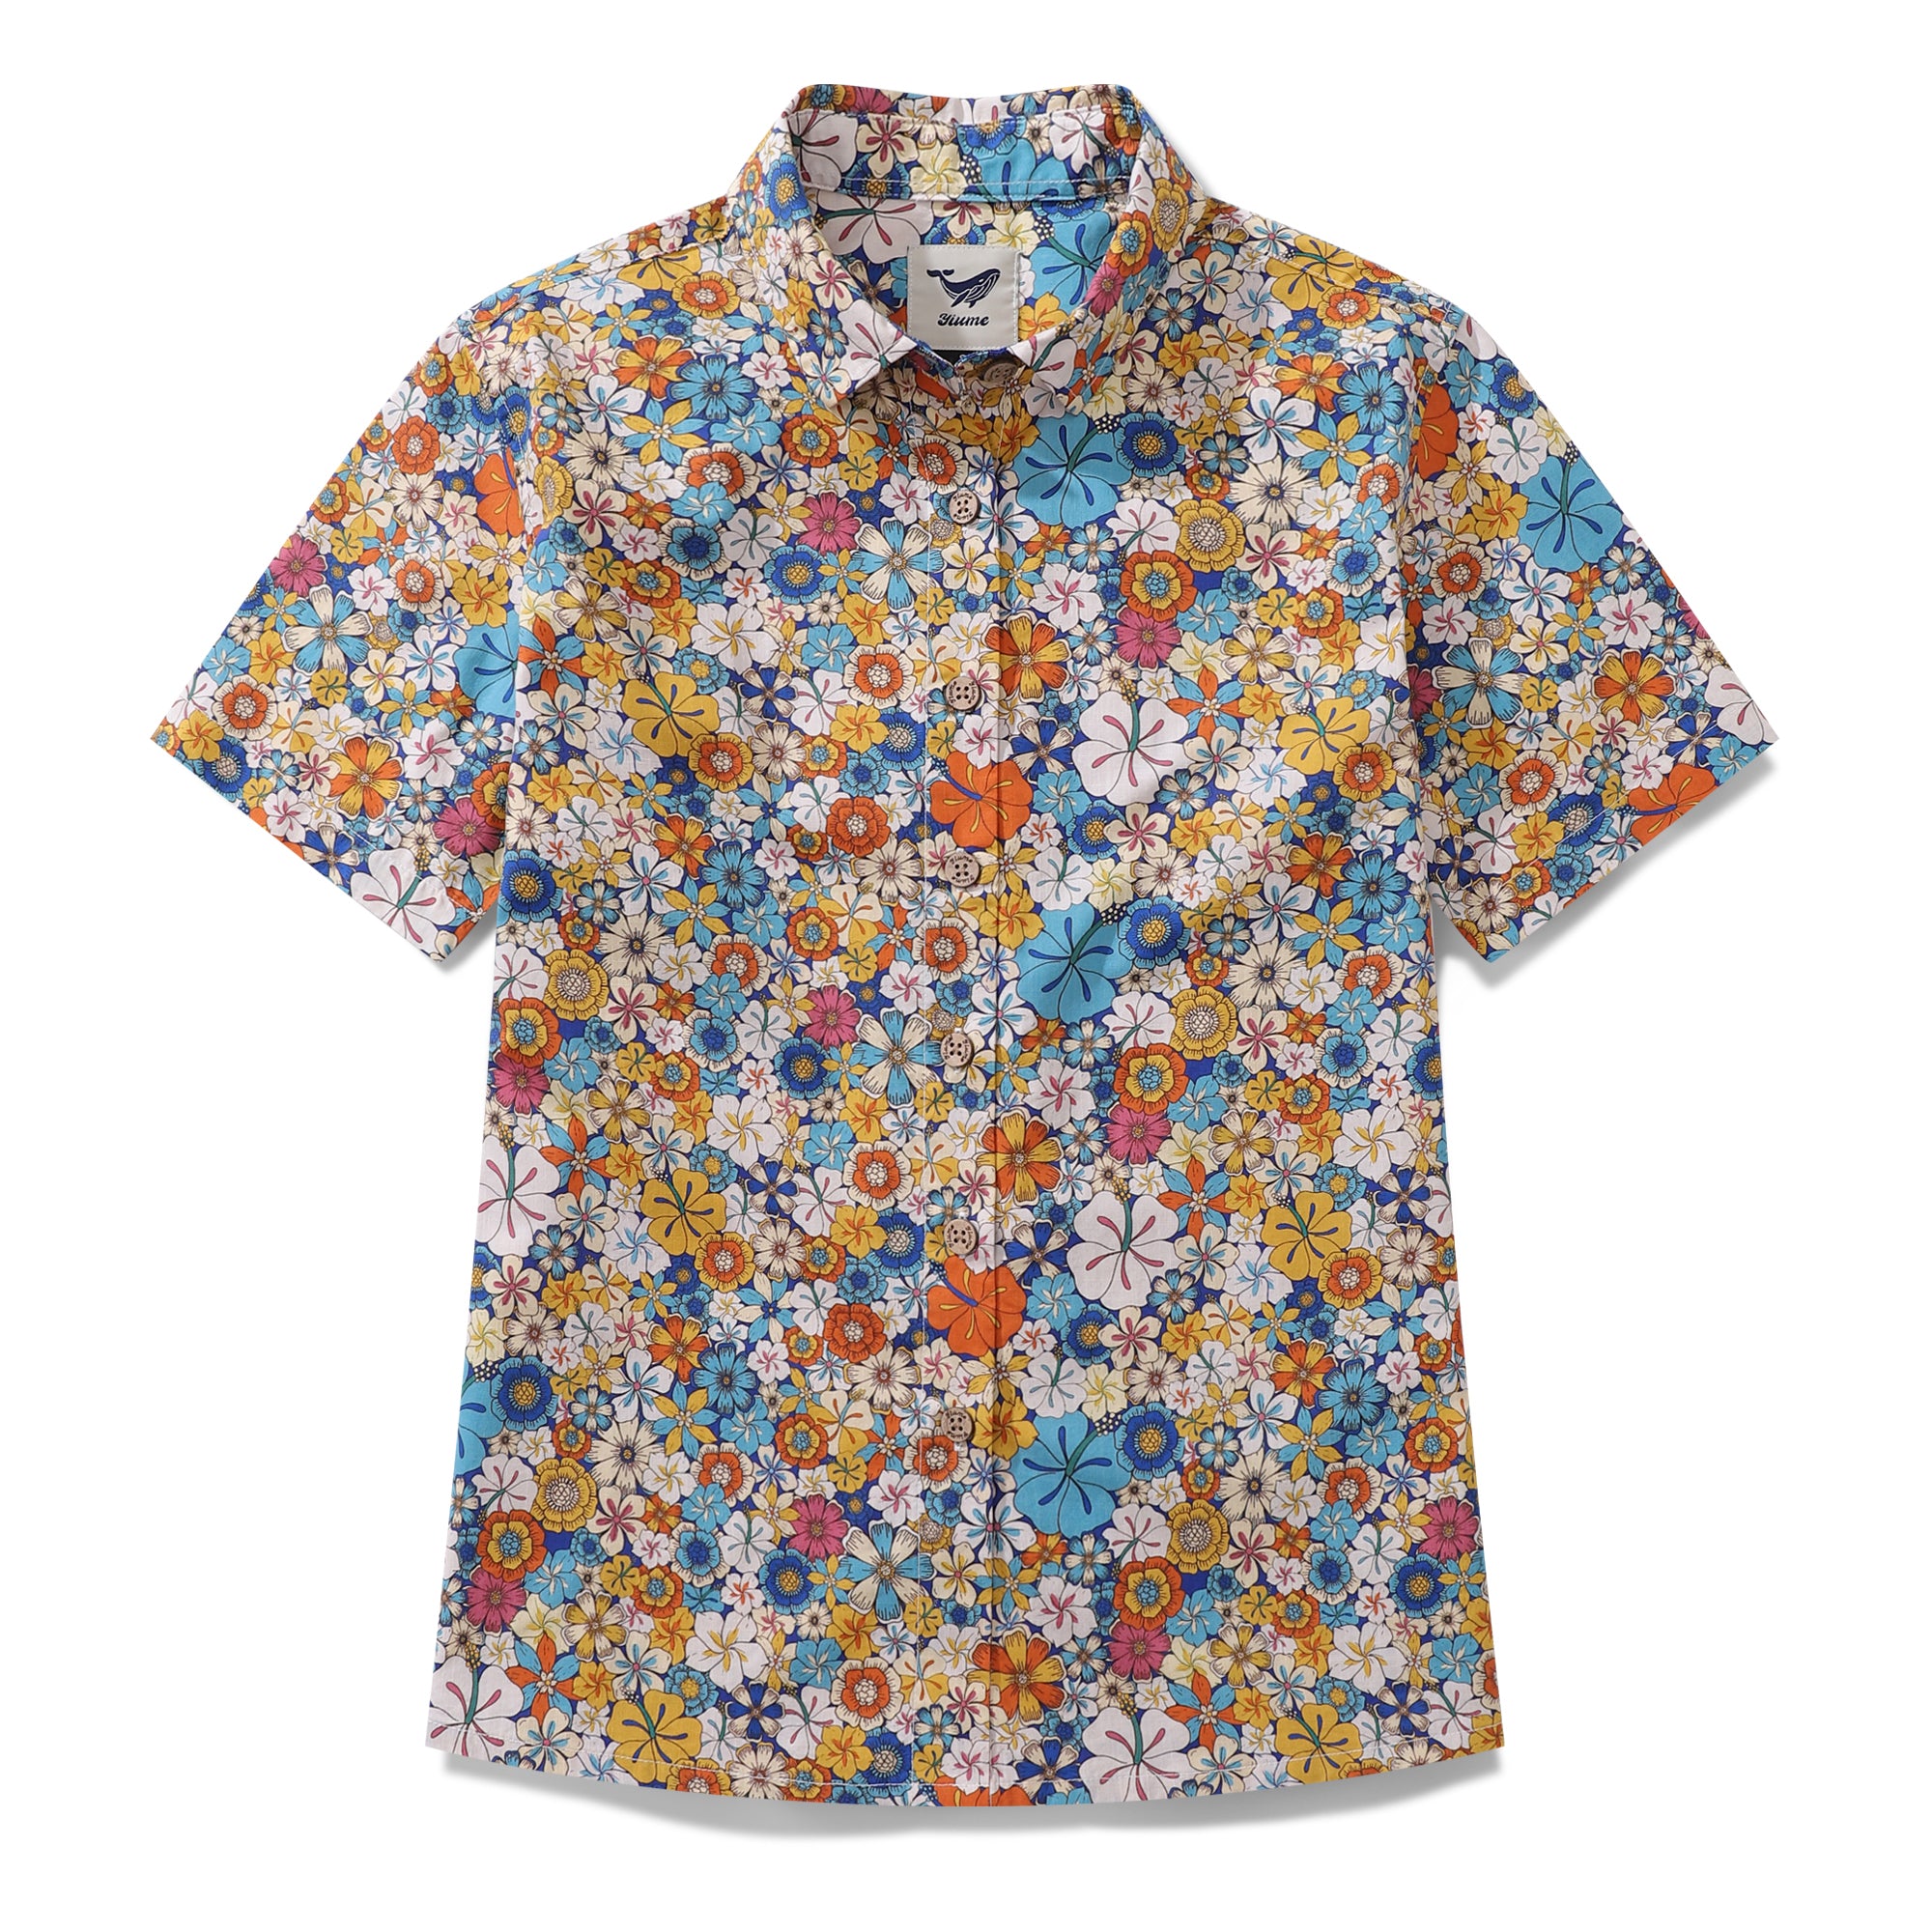 Women's Hawaiian Shirt Hibiscus Print Cotton Button-up Short Sleeve